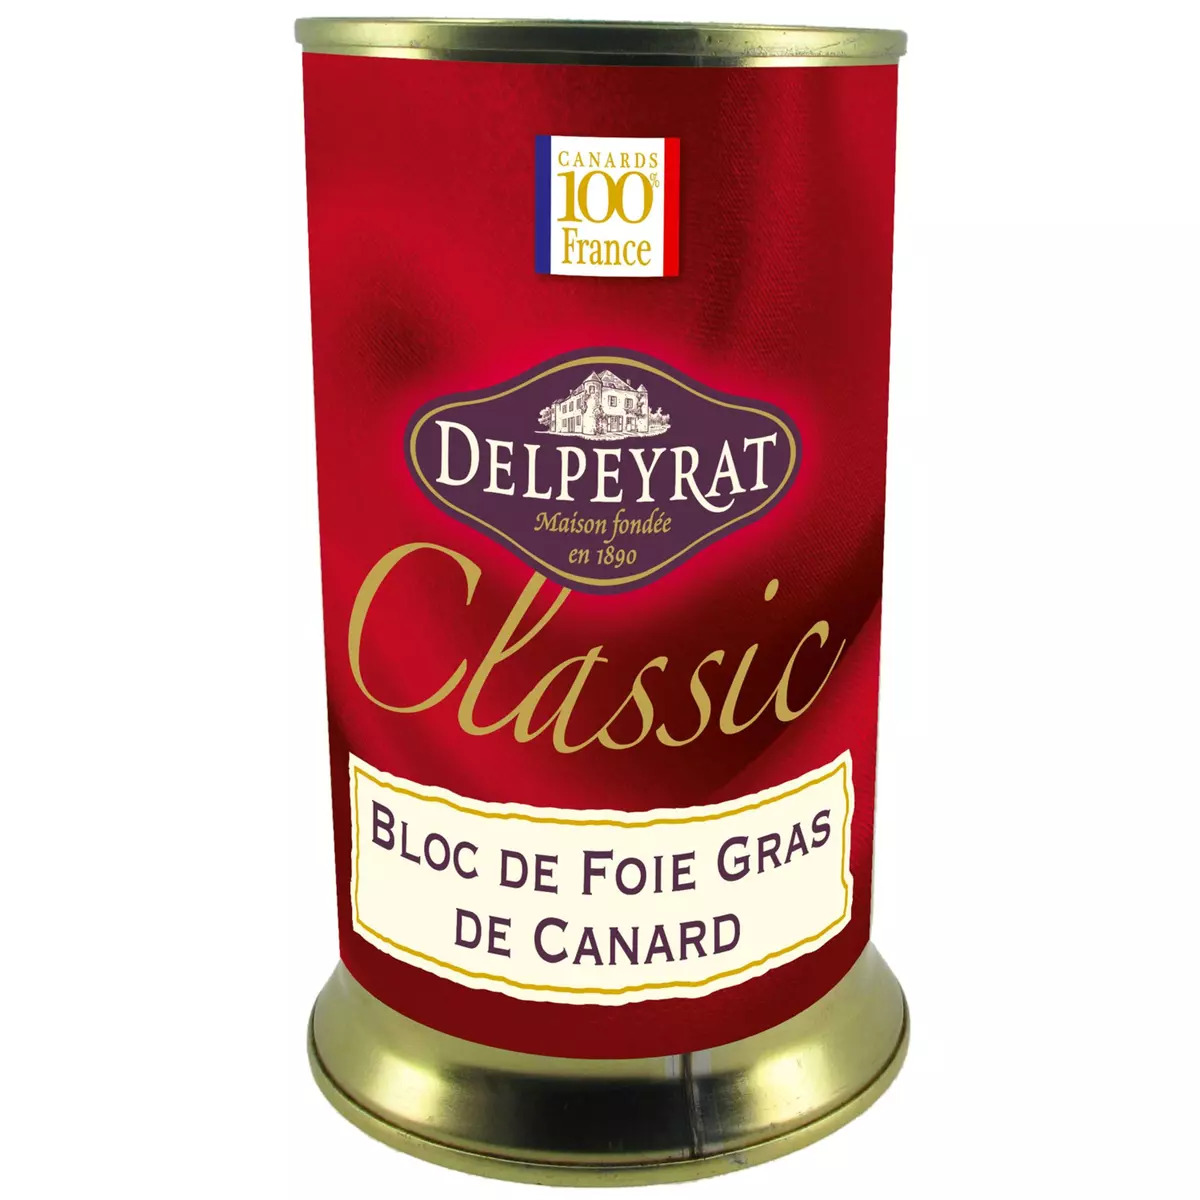 DELPEYRAT Bloc de foie gras de canard 100% France 330g